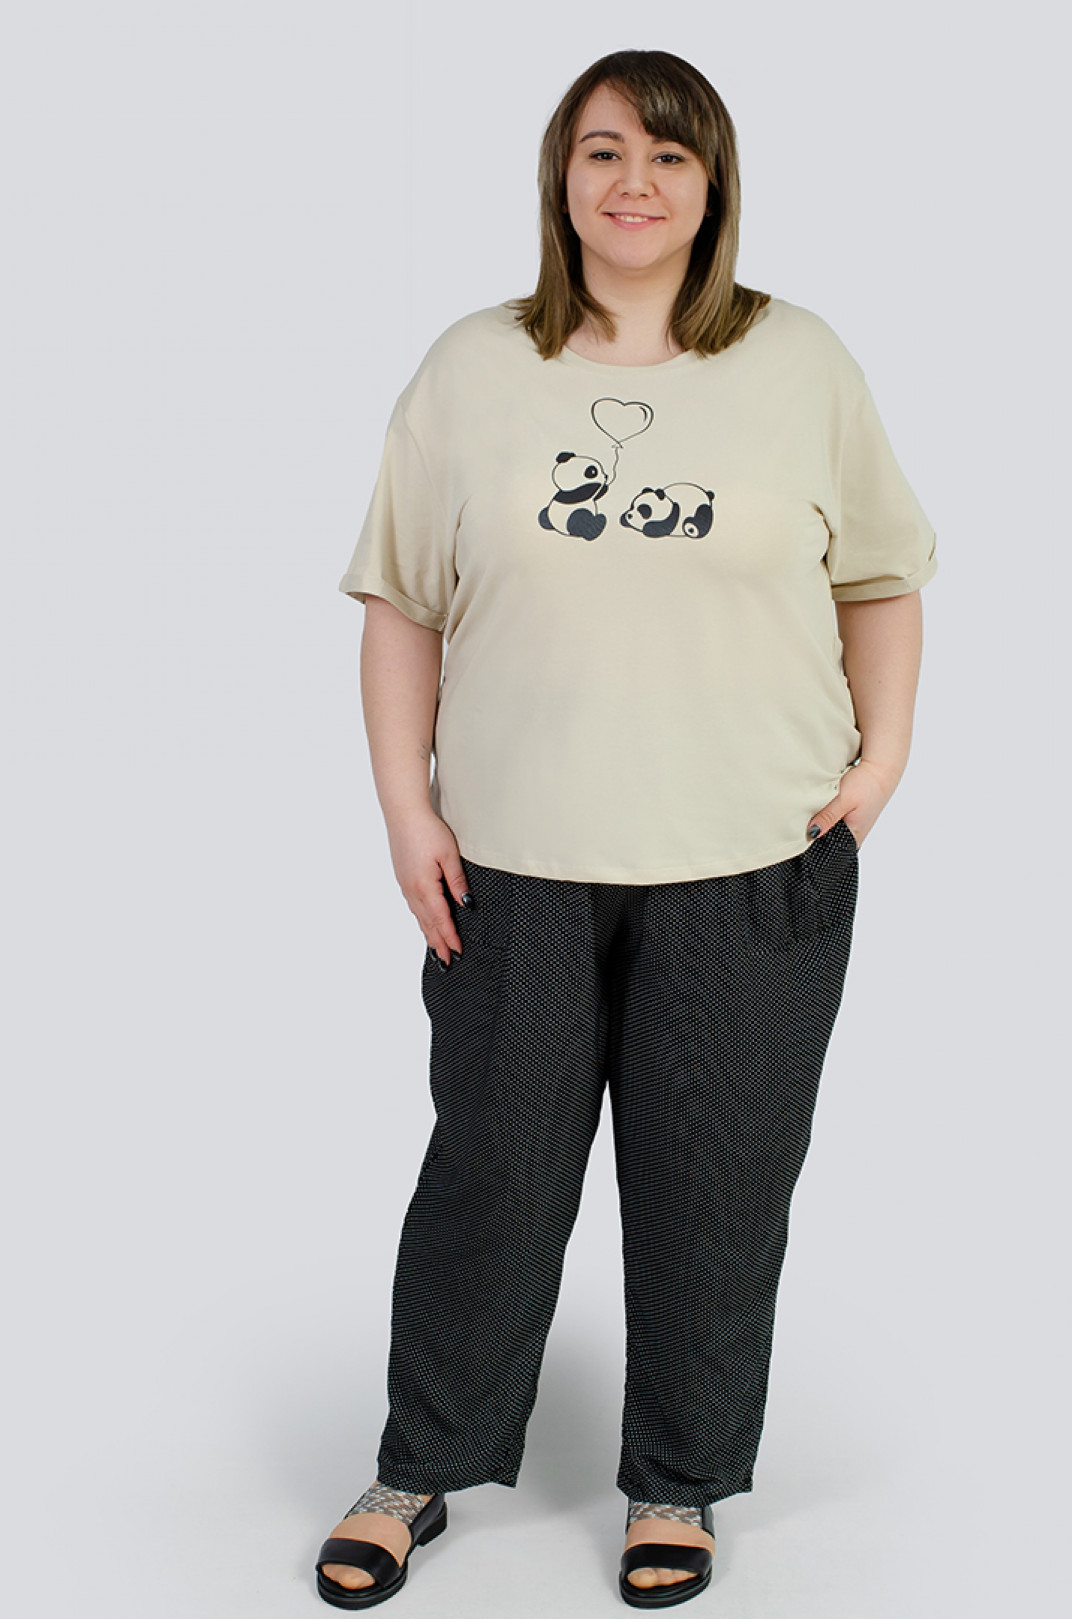 Коттоновая футболка с принтом панды больших размеров